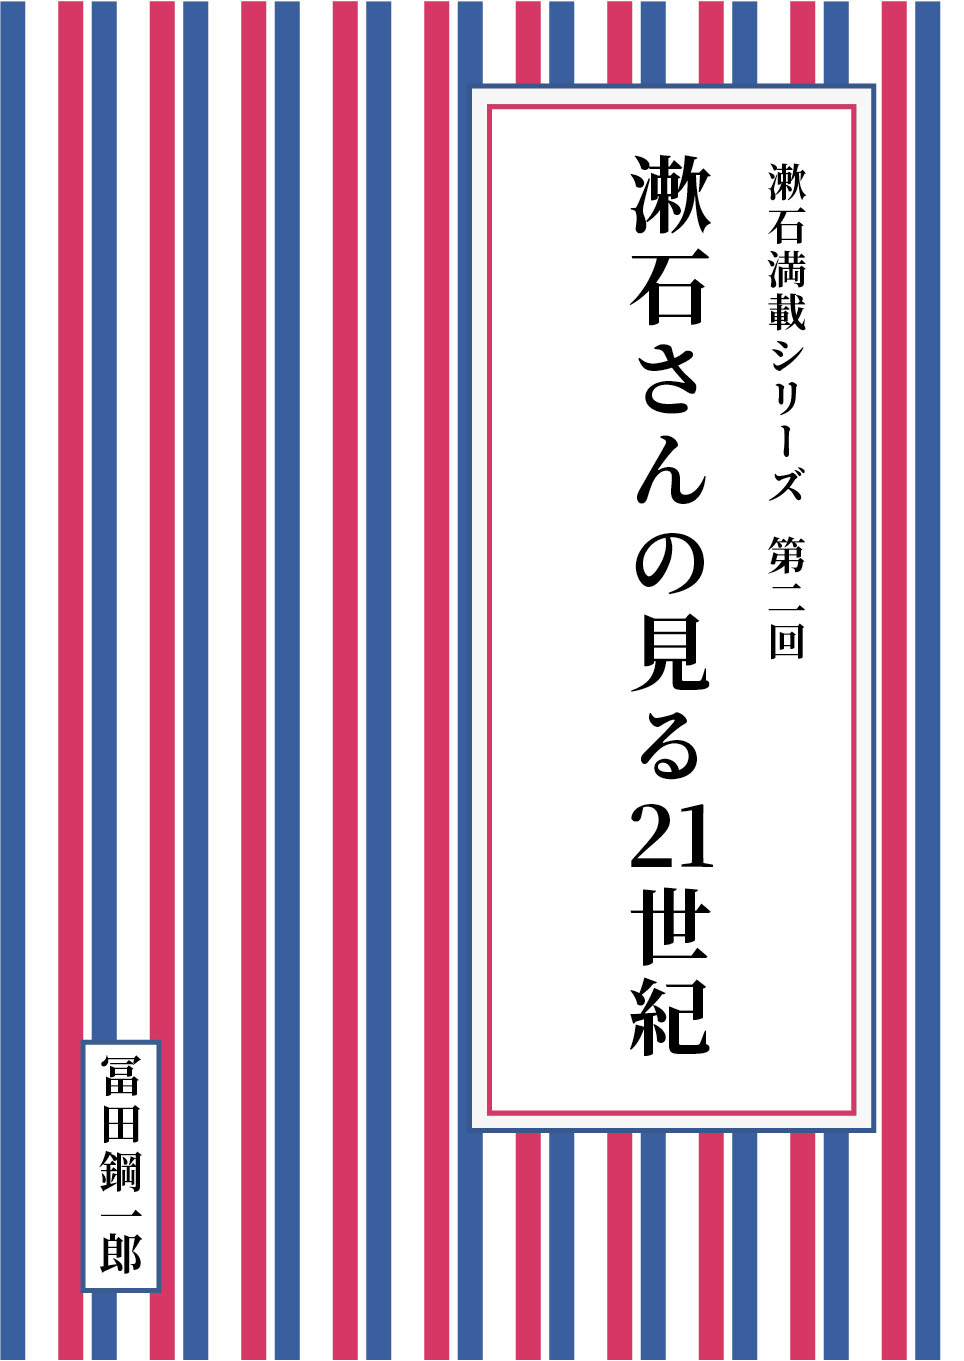 漱石満載シリーズ 第二回 漱石さんの見る21世紀